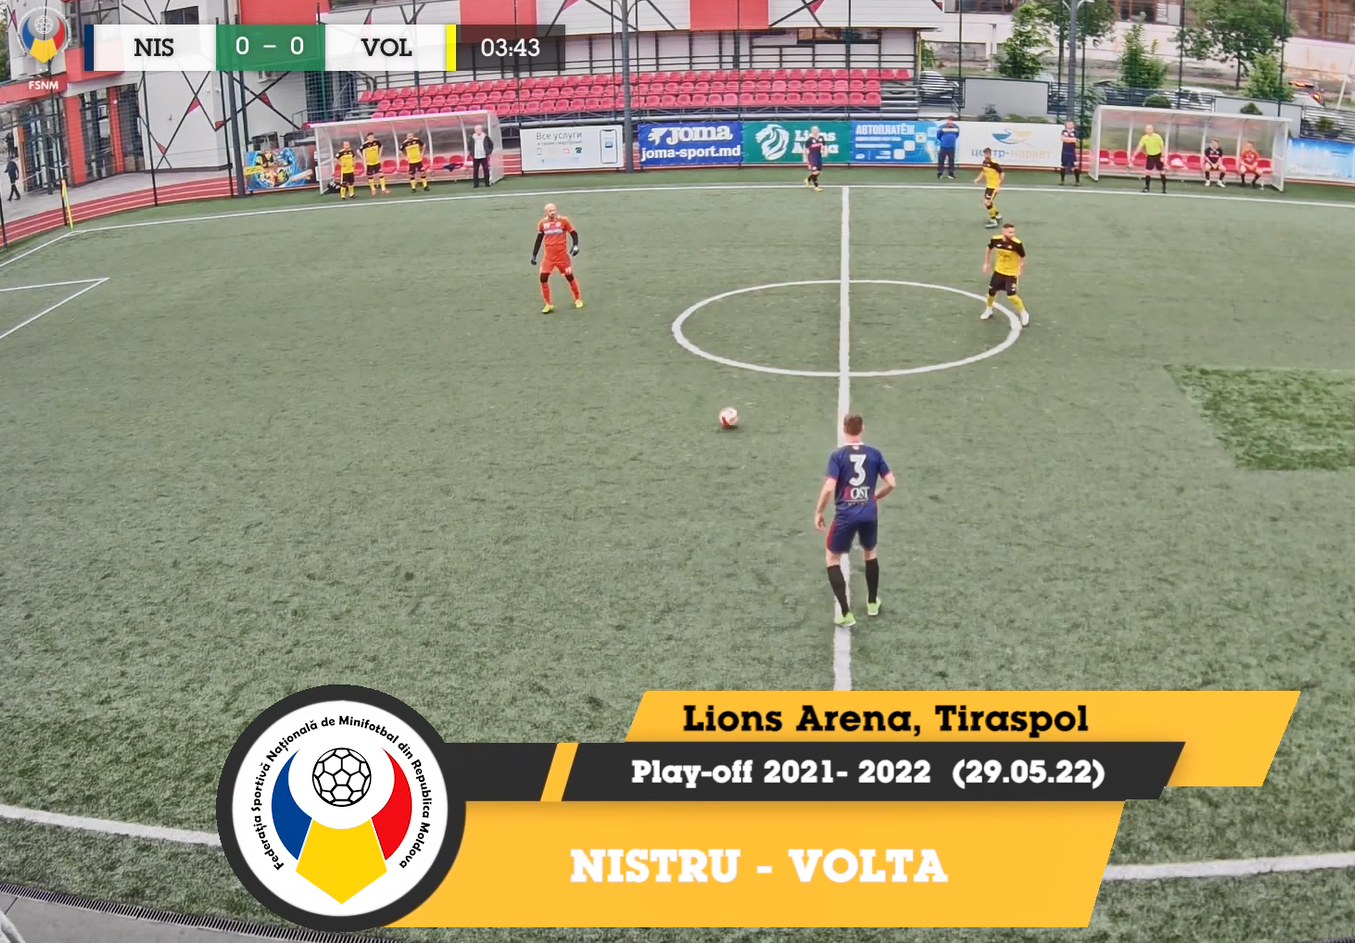 Match highlights NISTRU — VOLTA MATCH FOR 3rd PLACE